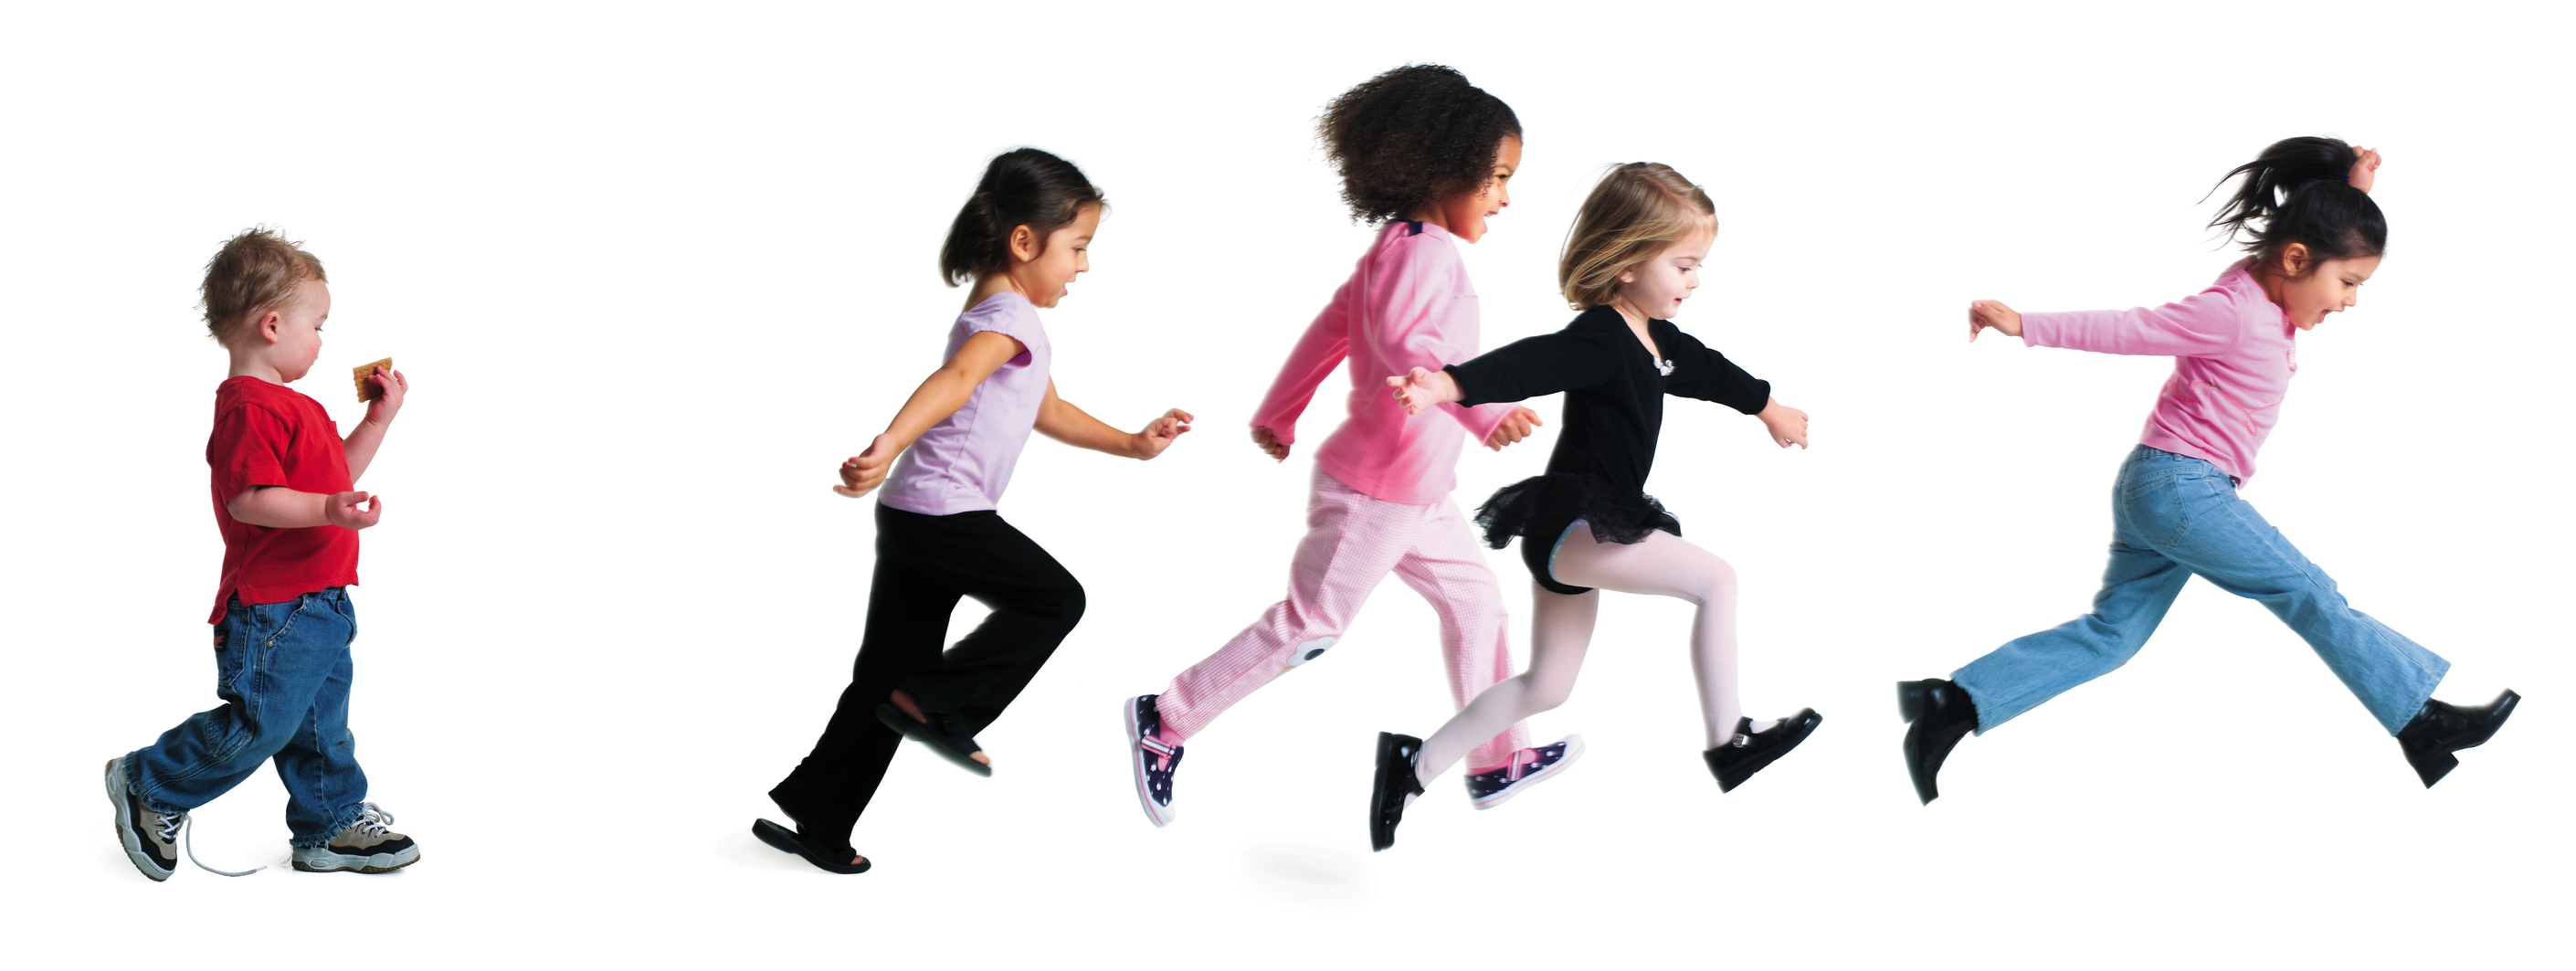 children running 